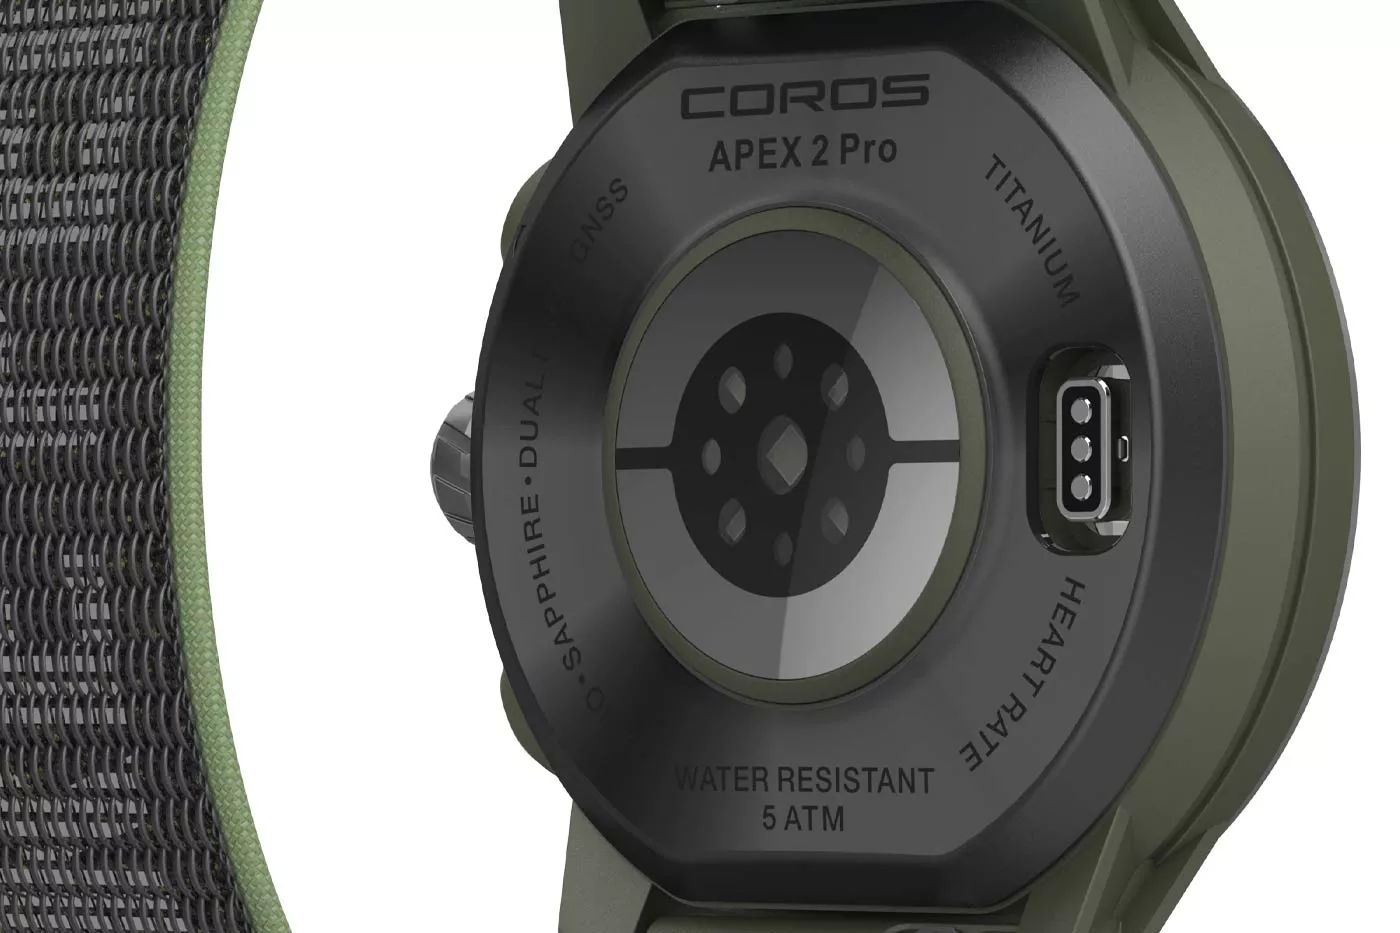 COROS APEX 2 y COROS APEX 2 Pro - Detalles e información de los nuevos  modelos - Correr una Maratón - Review de Garmin, Polar, Suunto, COROS